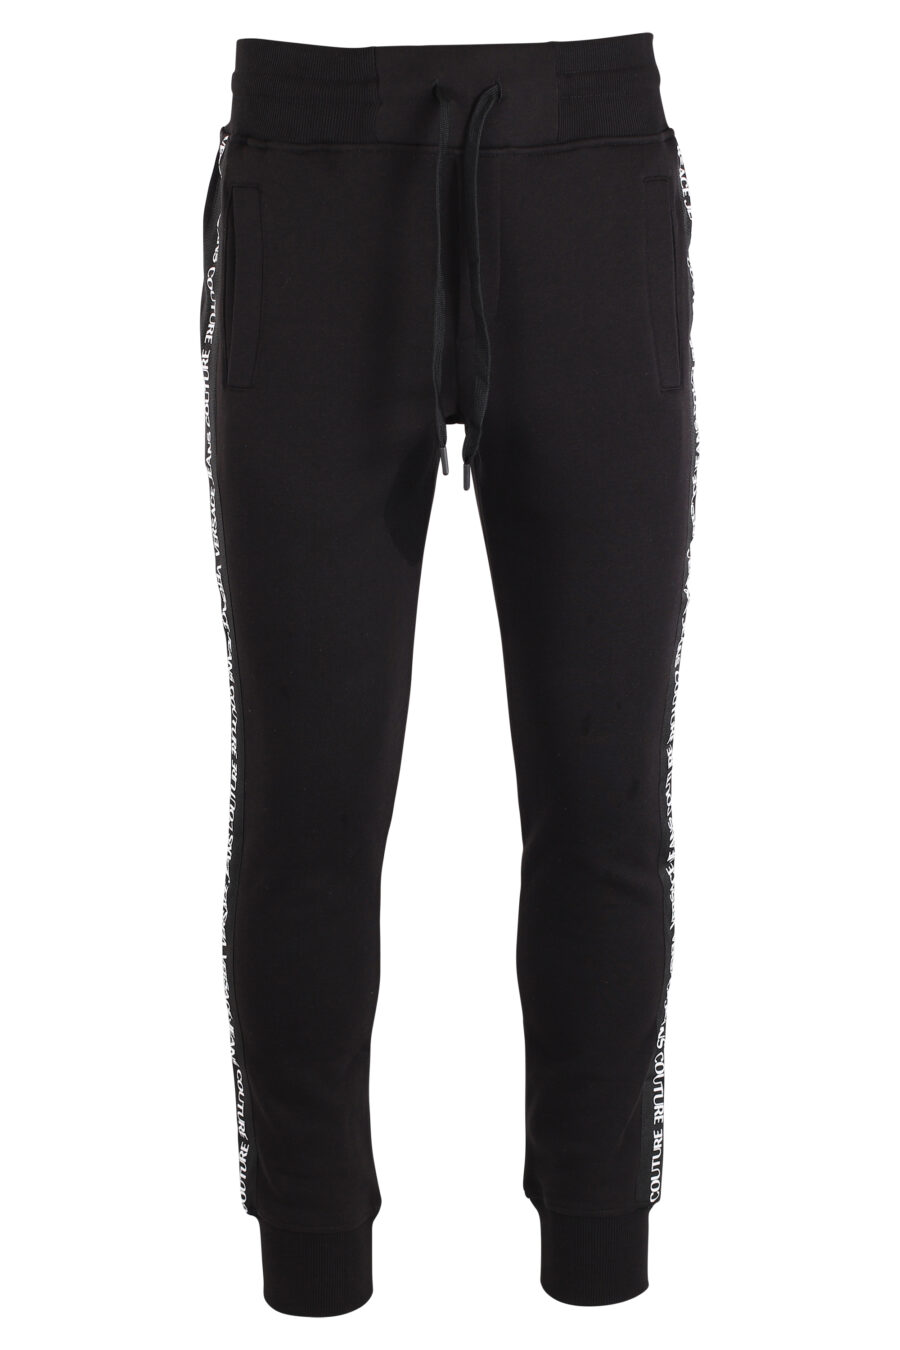 Pantalón de chandal negro con mini logo vertical - IMG 4087